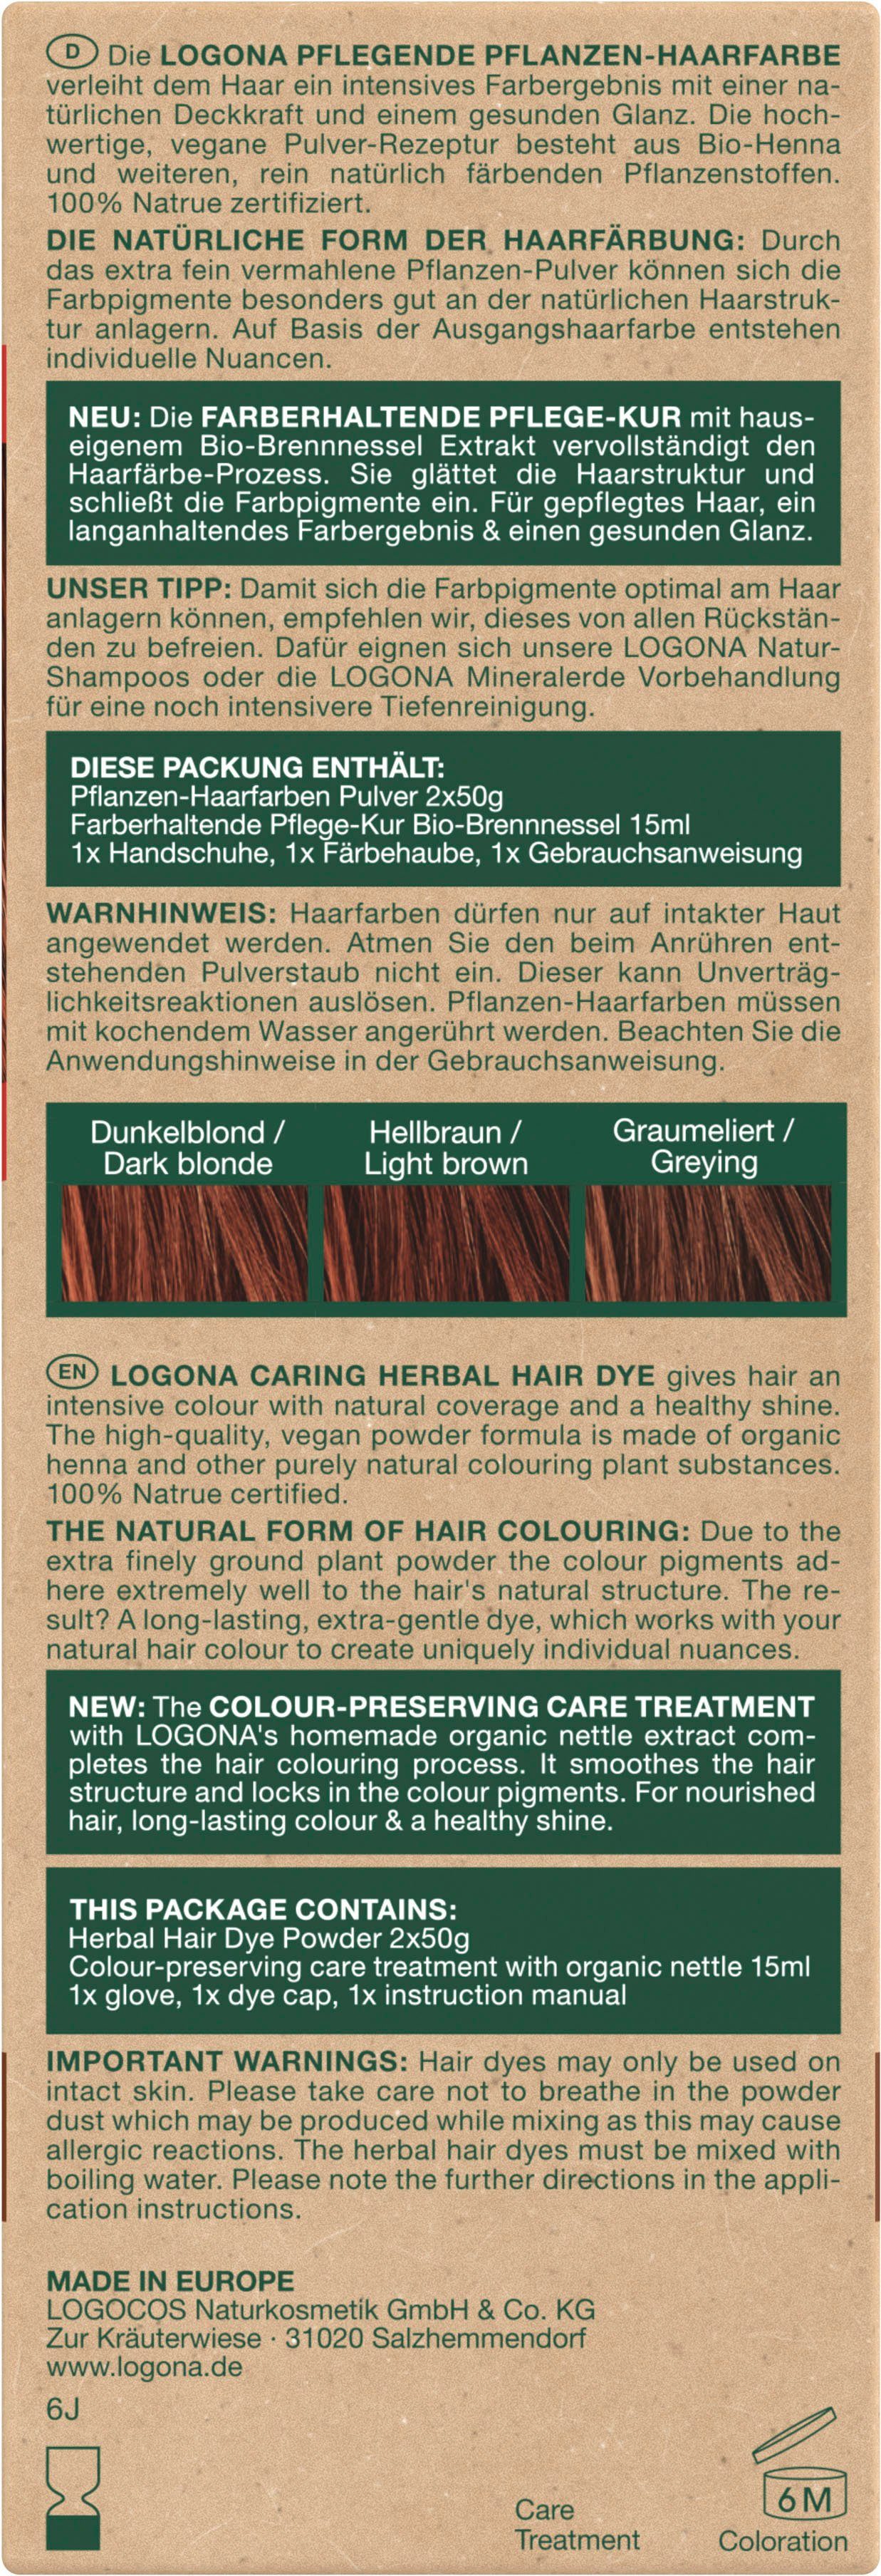 LOGONA Haarfarbe Pflanzen-Haarfarbe Pulver 05 Mahagonirot